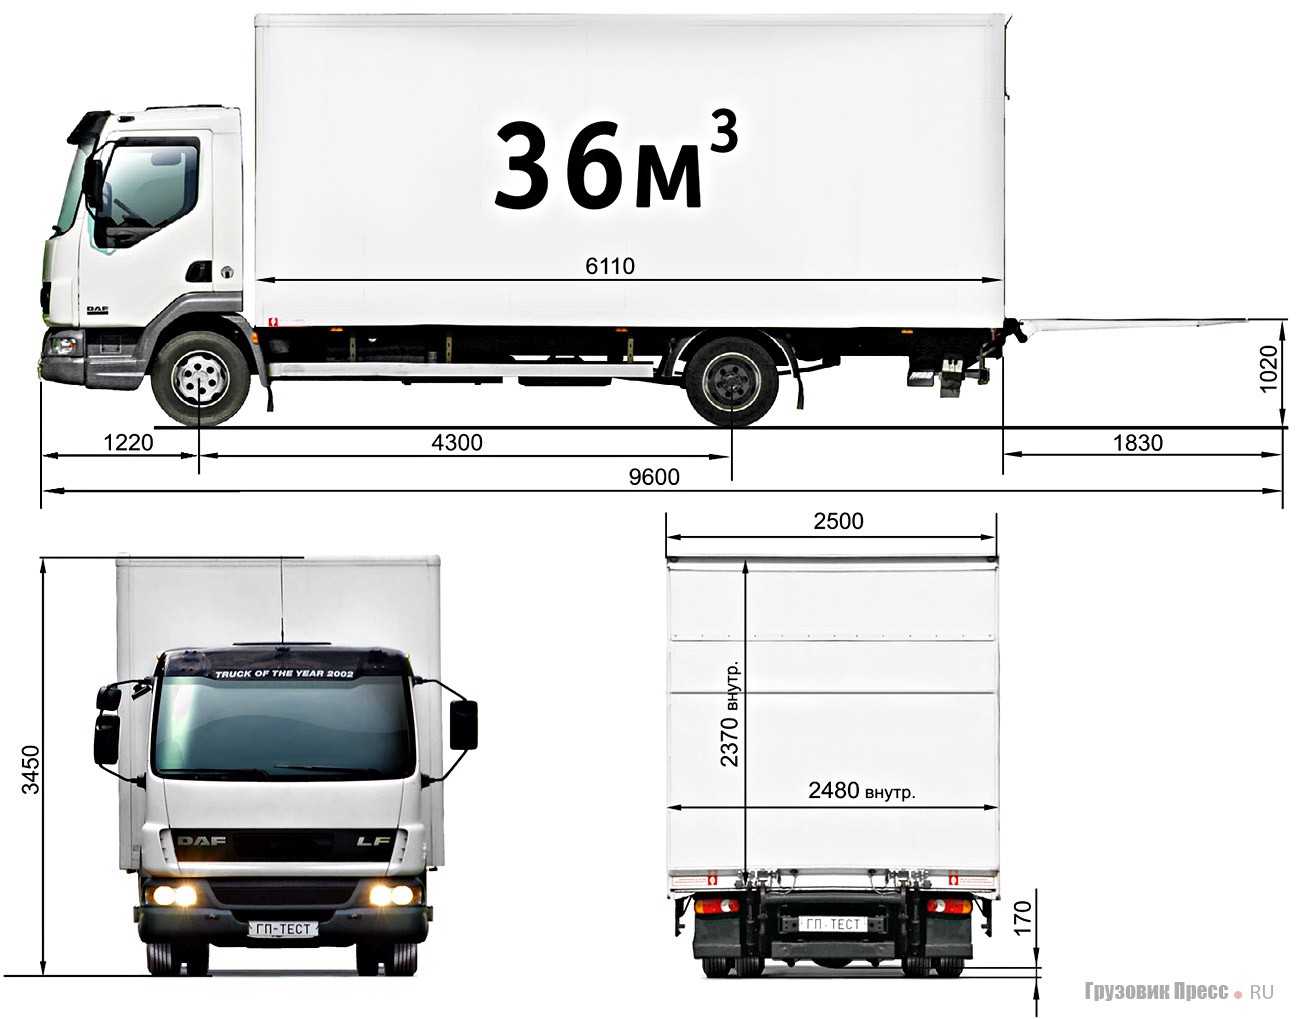 Обзор новых грузовиков daf cf, xf и lf:  - журнал движок.